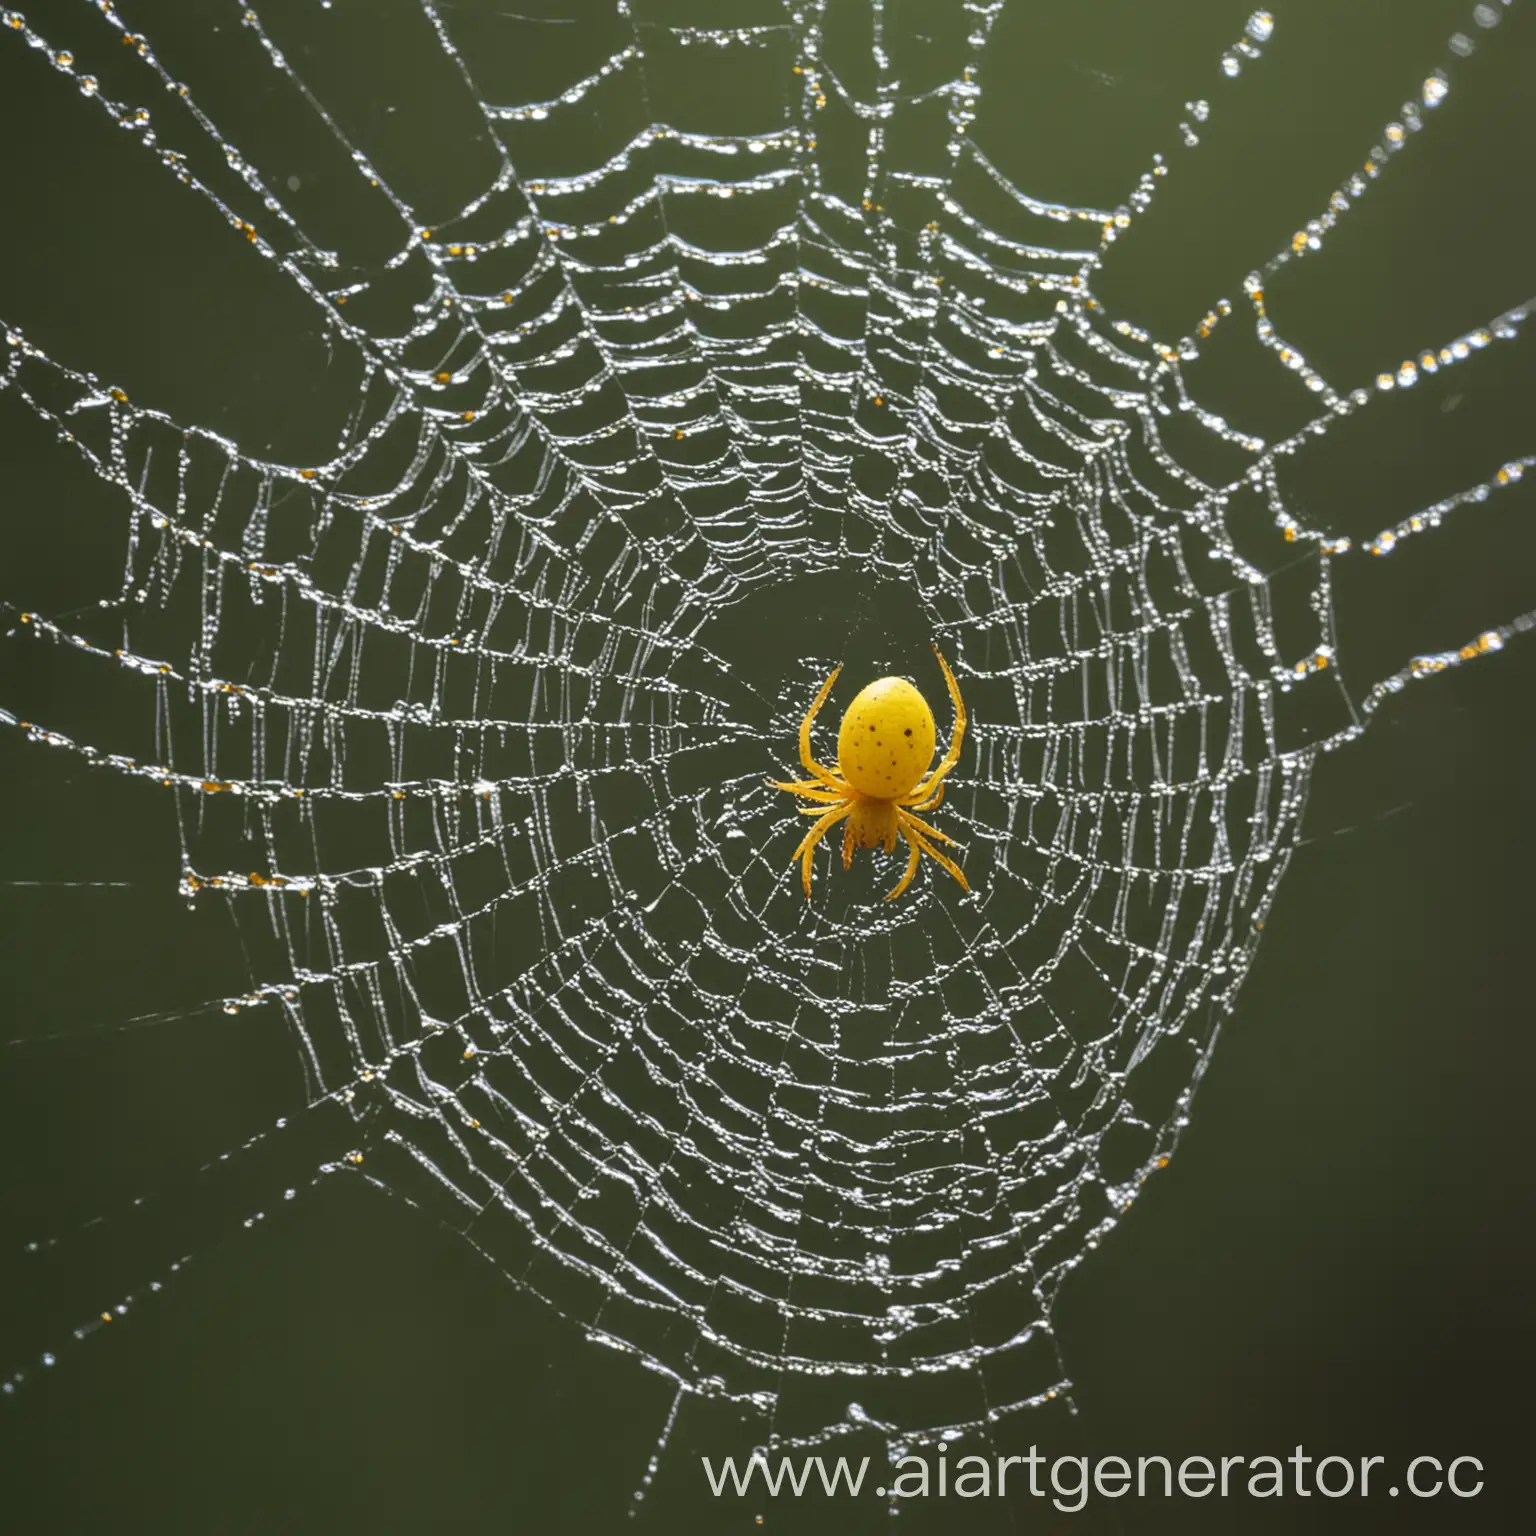 паутина с жёлтым пауком